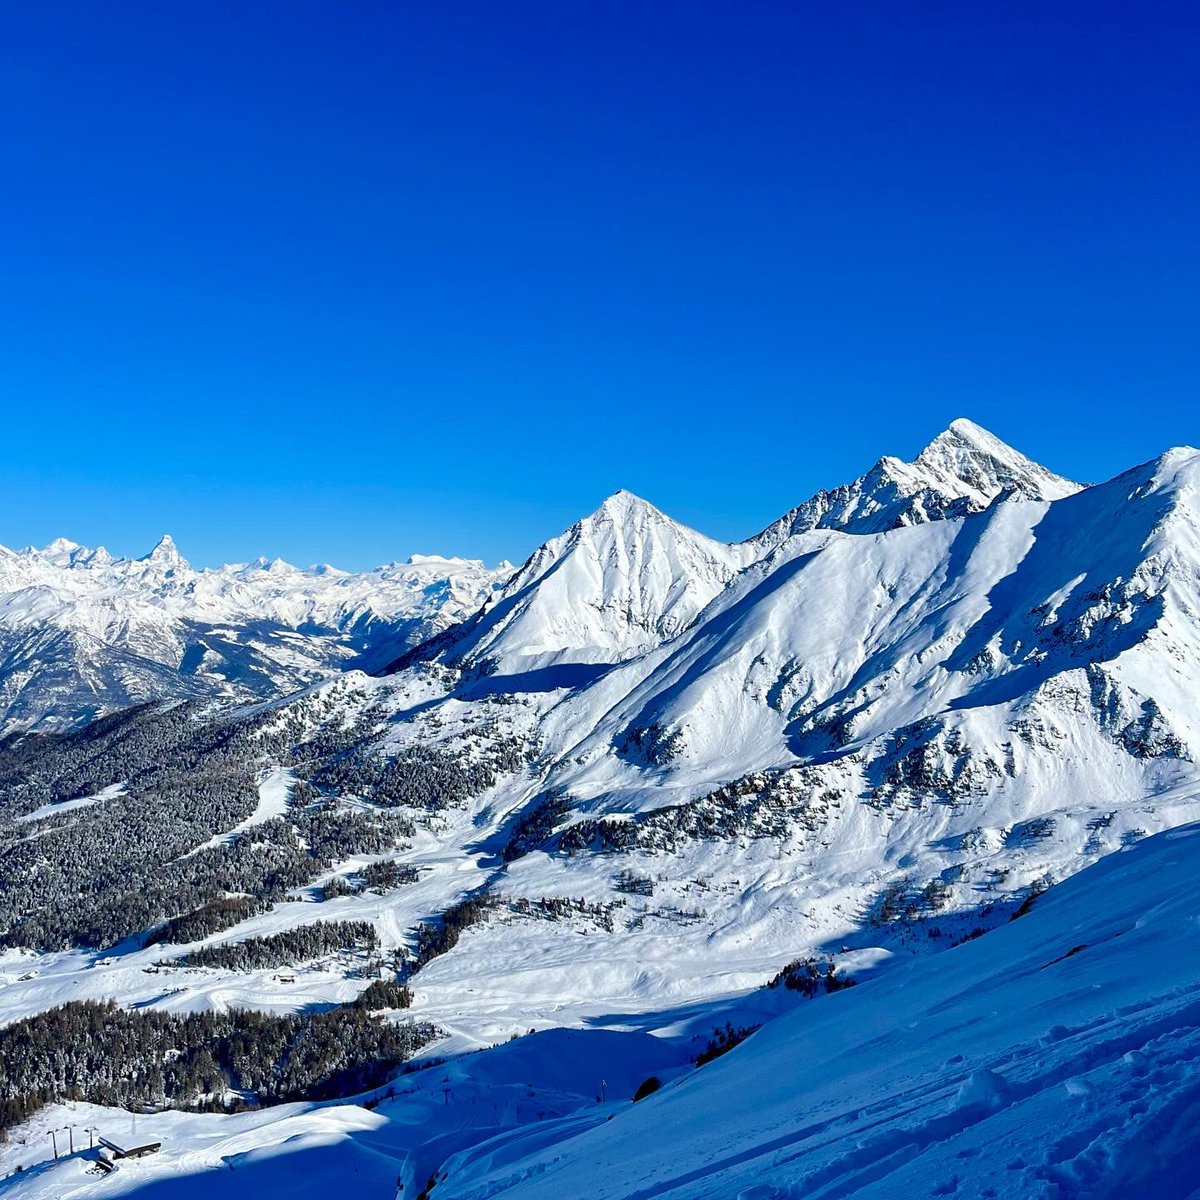 Freddo intenso, neve, sole: la stagione dello scialpinismo non poteva iniziare meglio #mountain #skialp #aostavalley